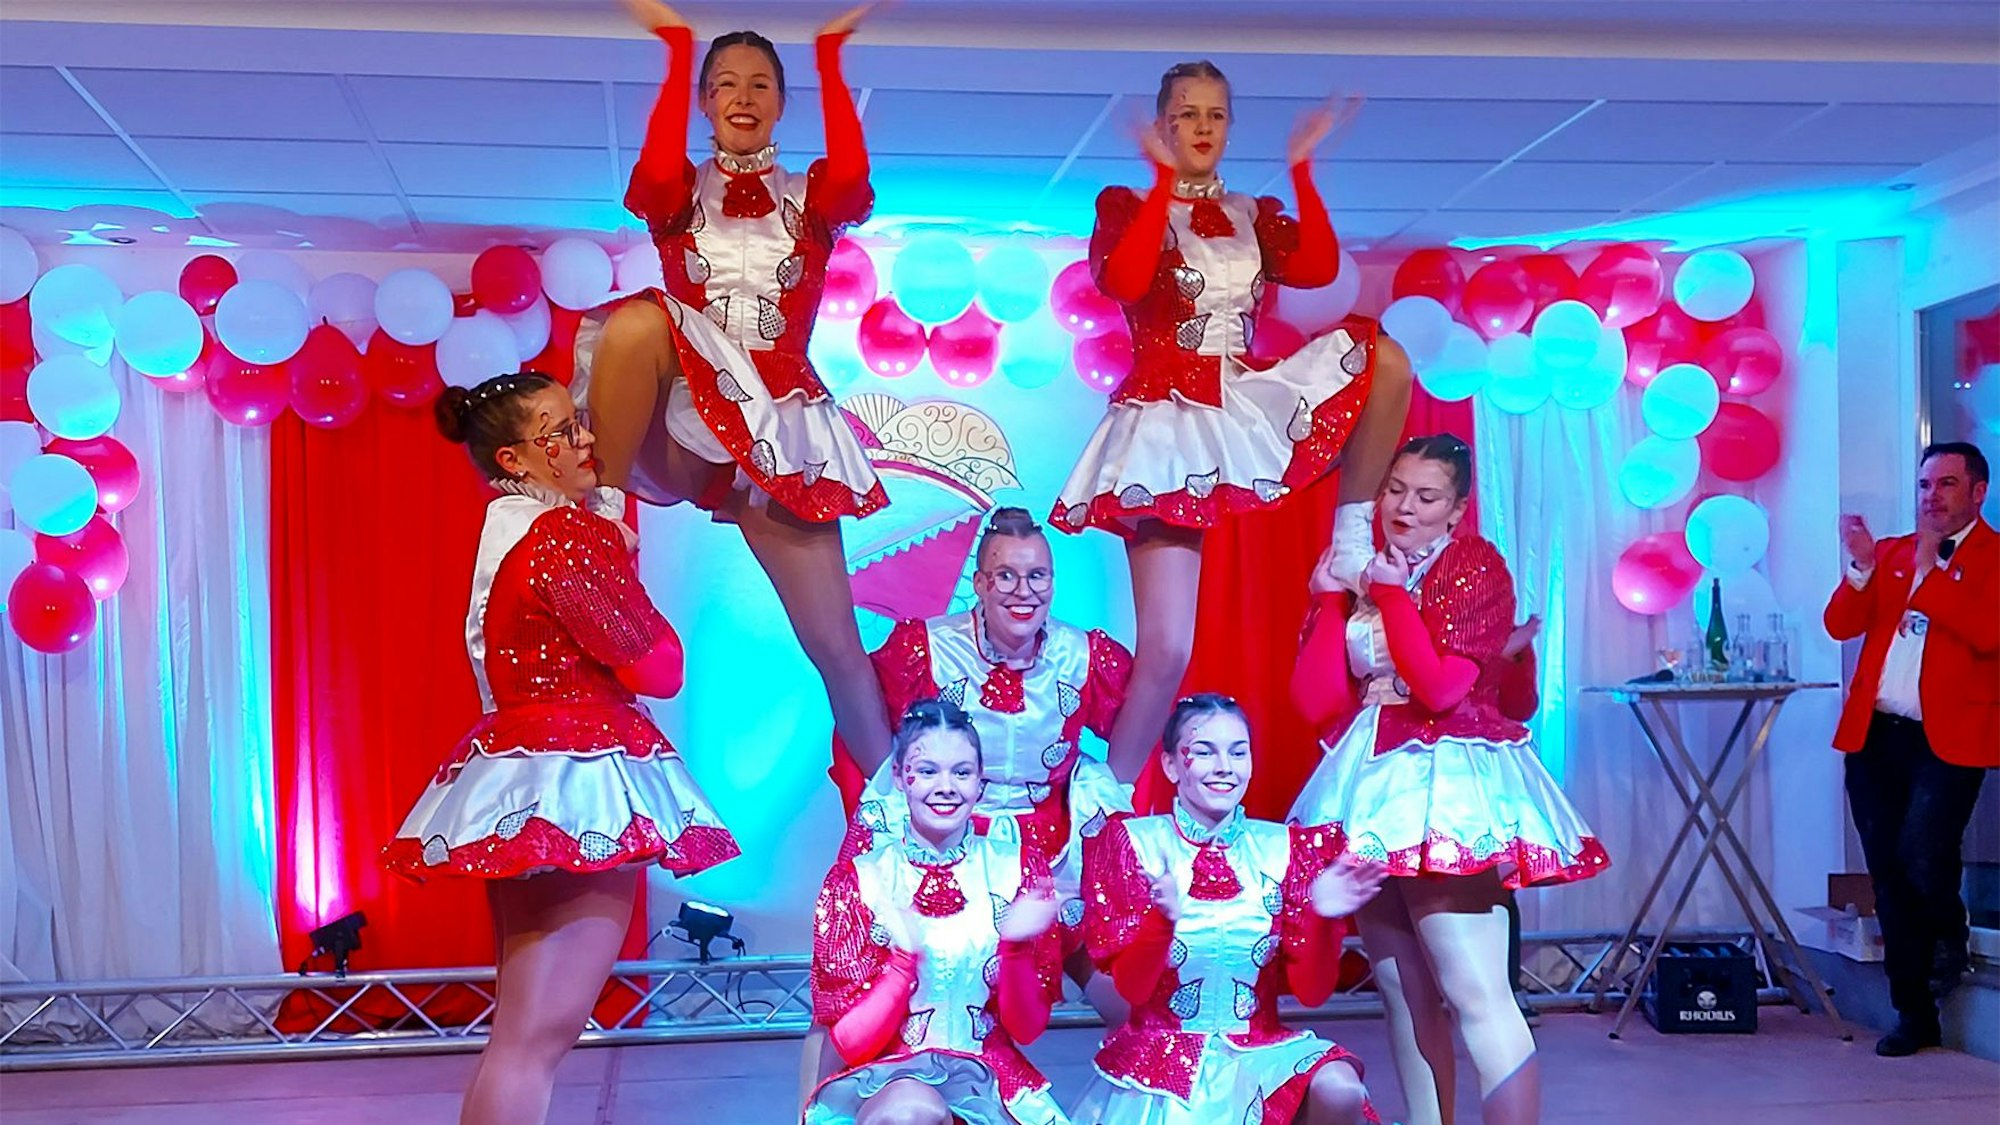 Sieben junge Frauen der Tanzgarde zeigen eine Akrobatische Pose auf einer Bühne.